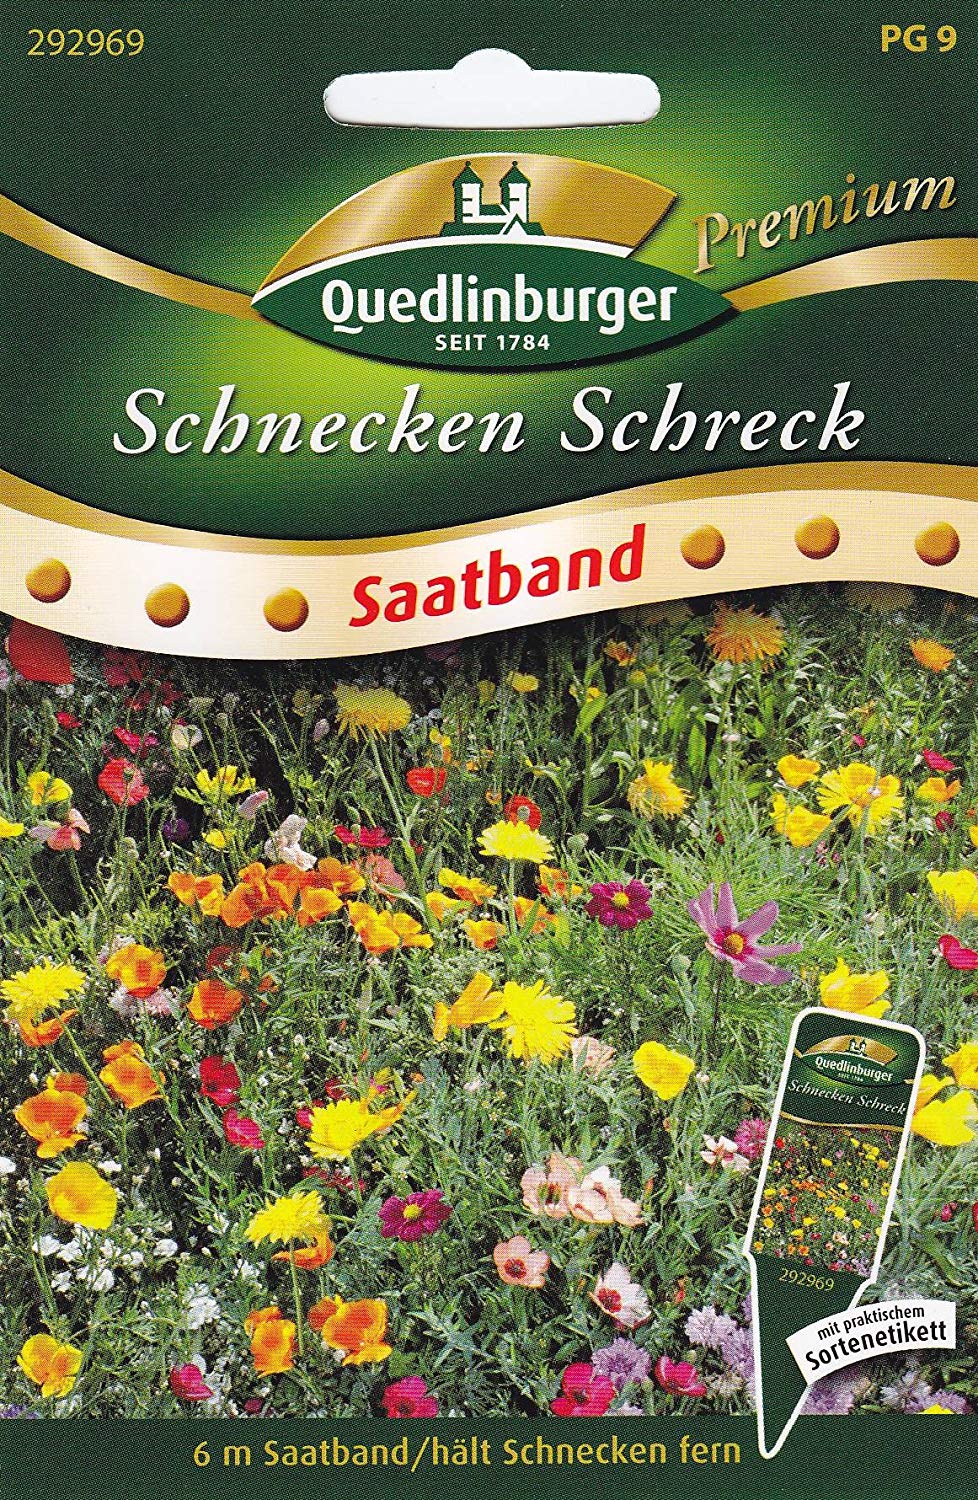 Gartendeko Schnecke Best Of Sb Schnecken Schreck Blühende Mischung